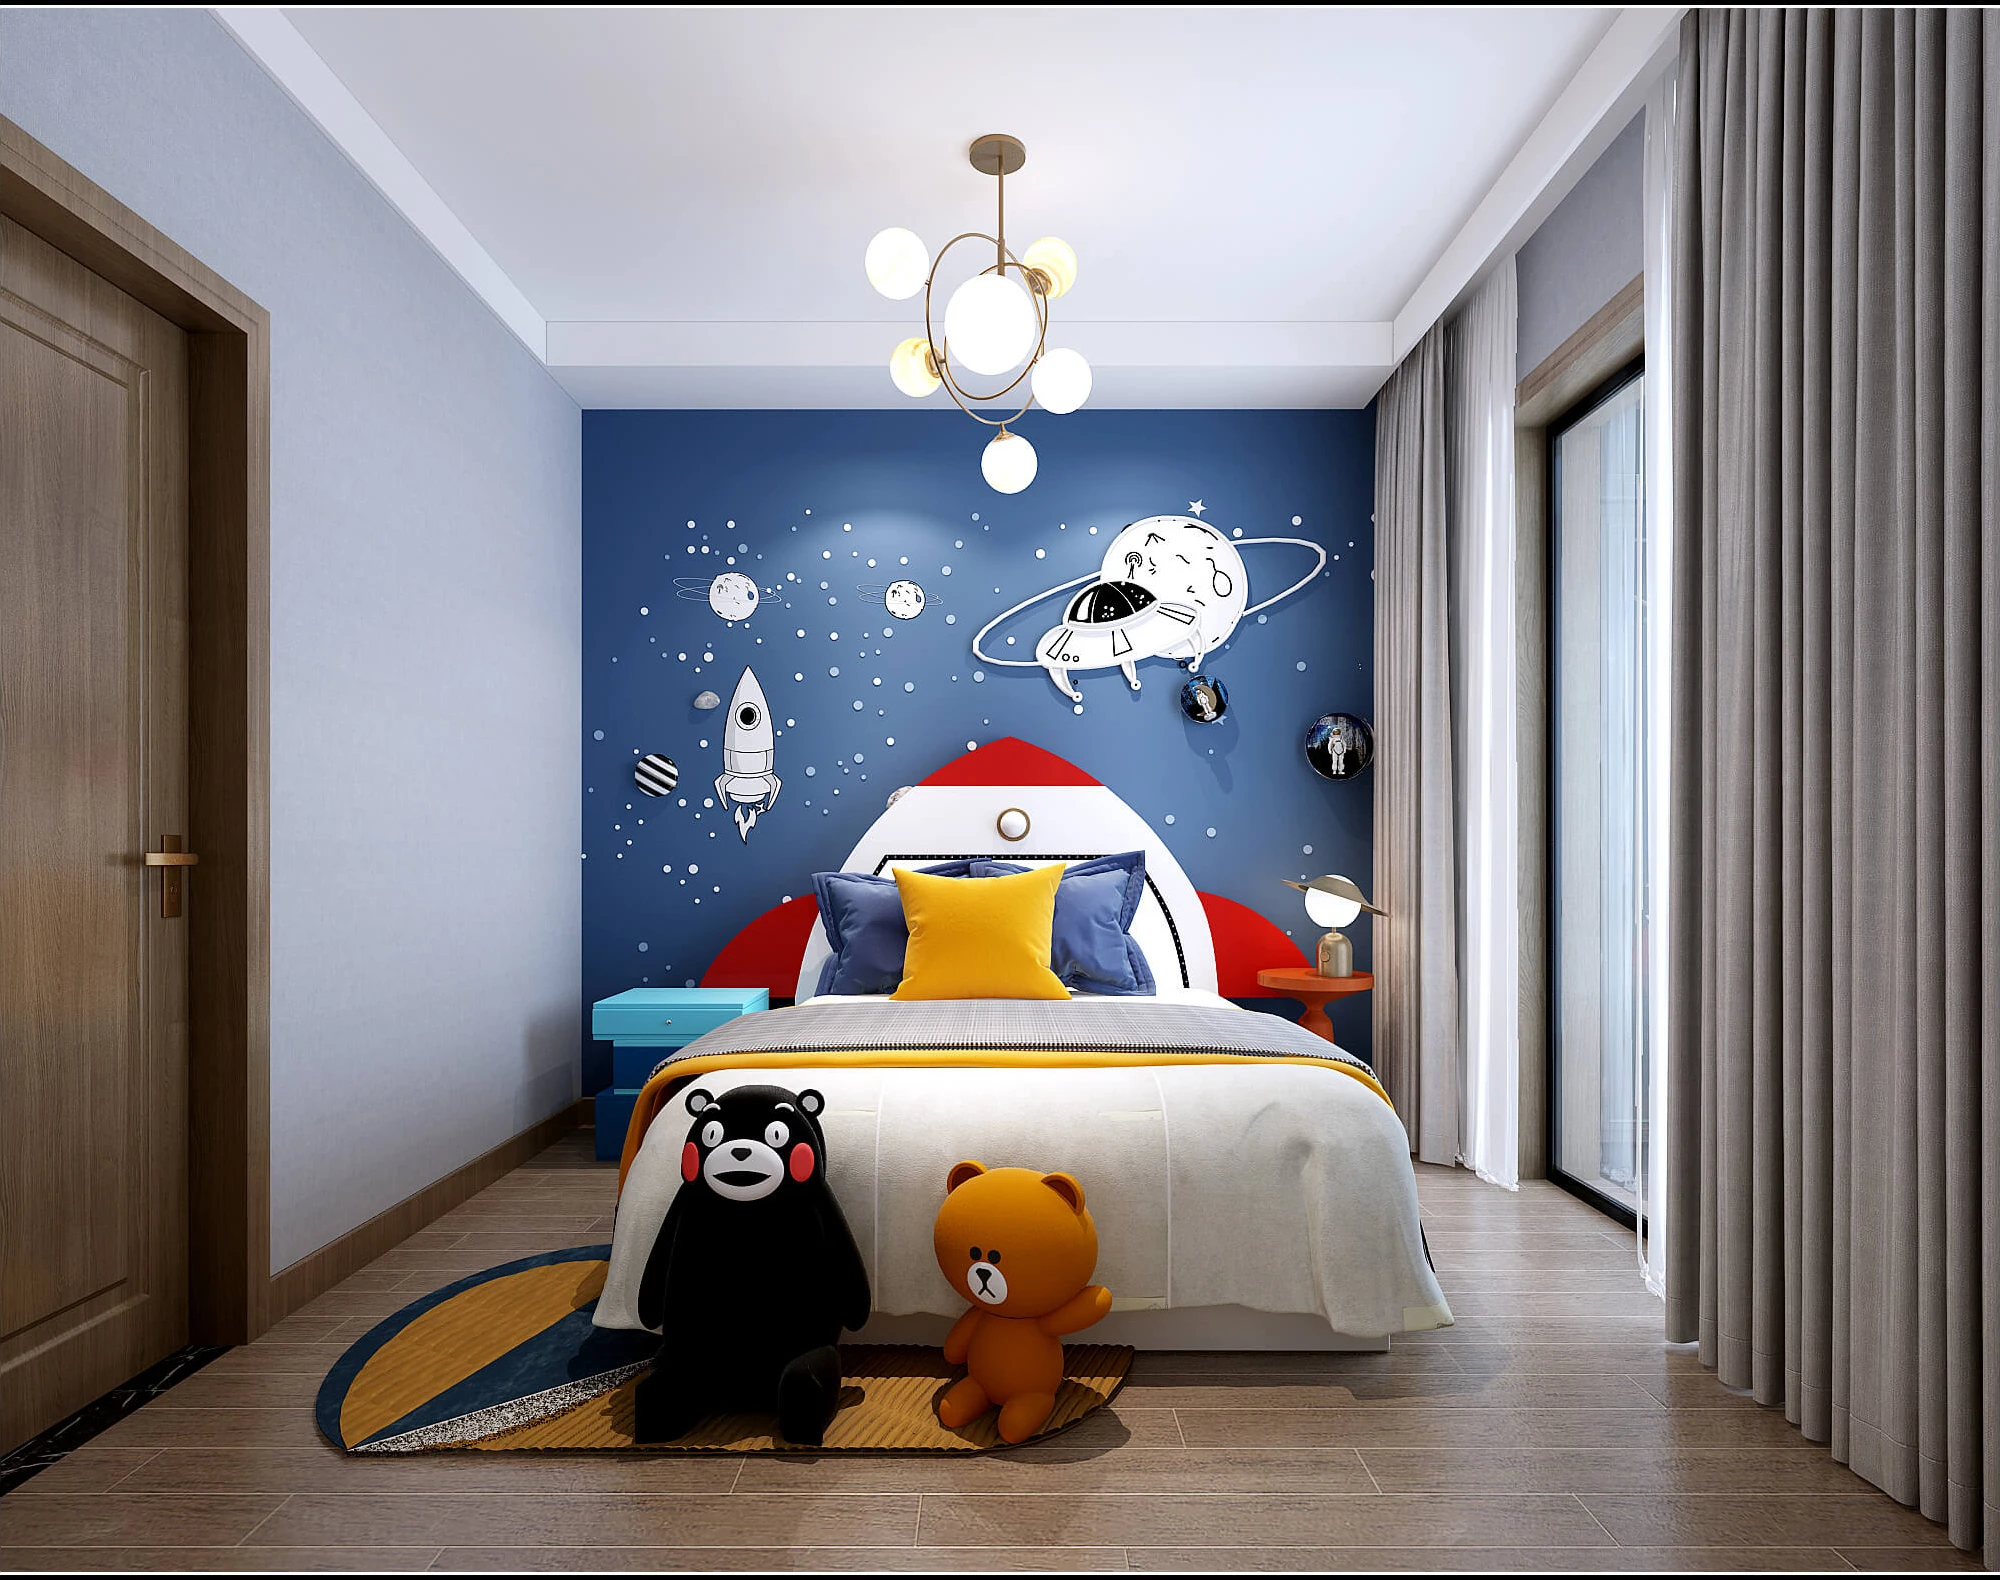 儿童房采用太空主题壁布,给男孩房带来科技主题